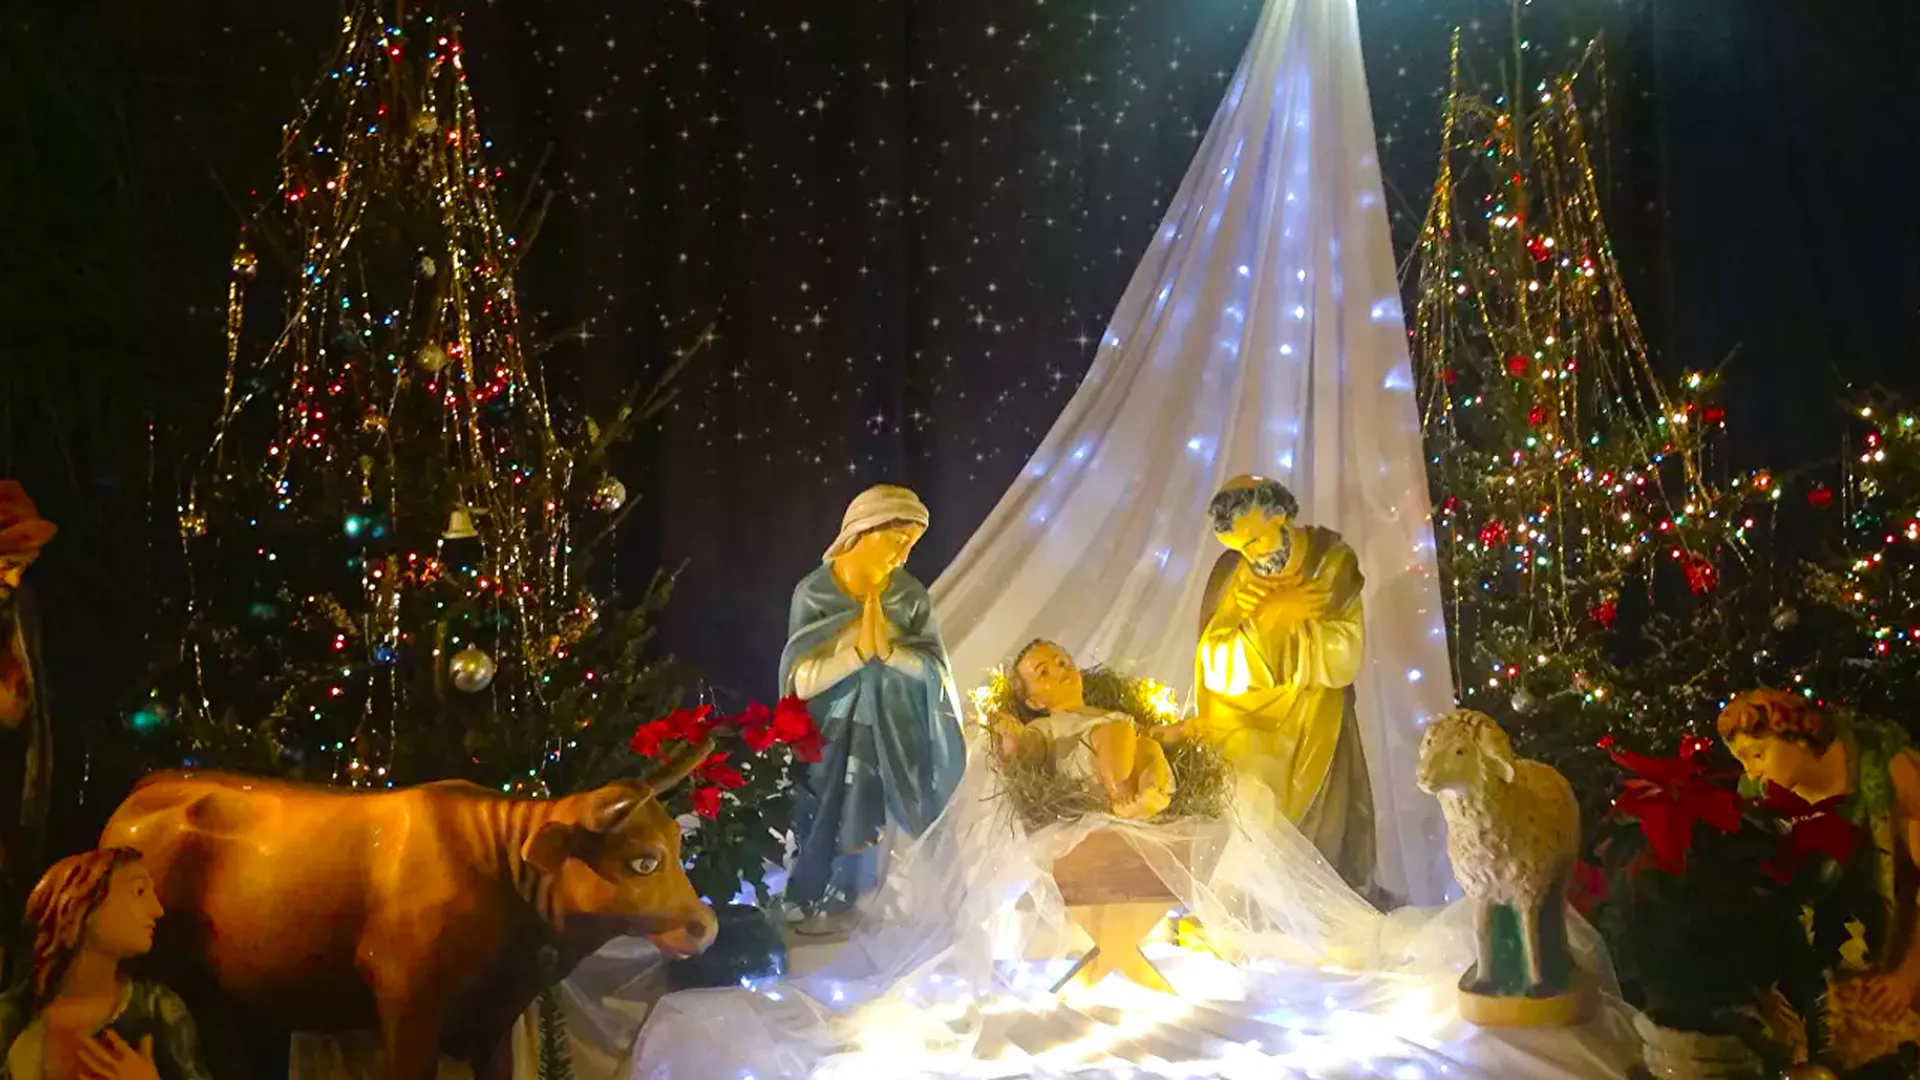 Один праздник, но две даты. Почему католики и православные отмечают Рождество в разные дни